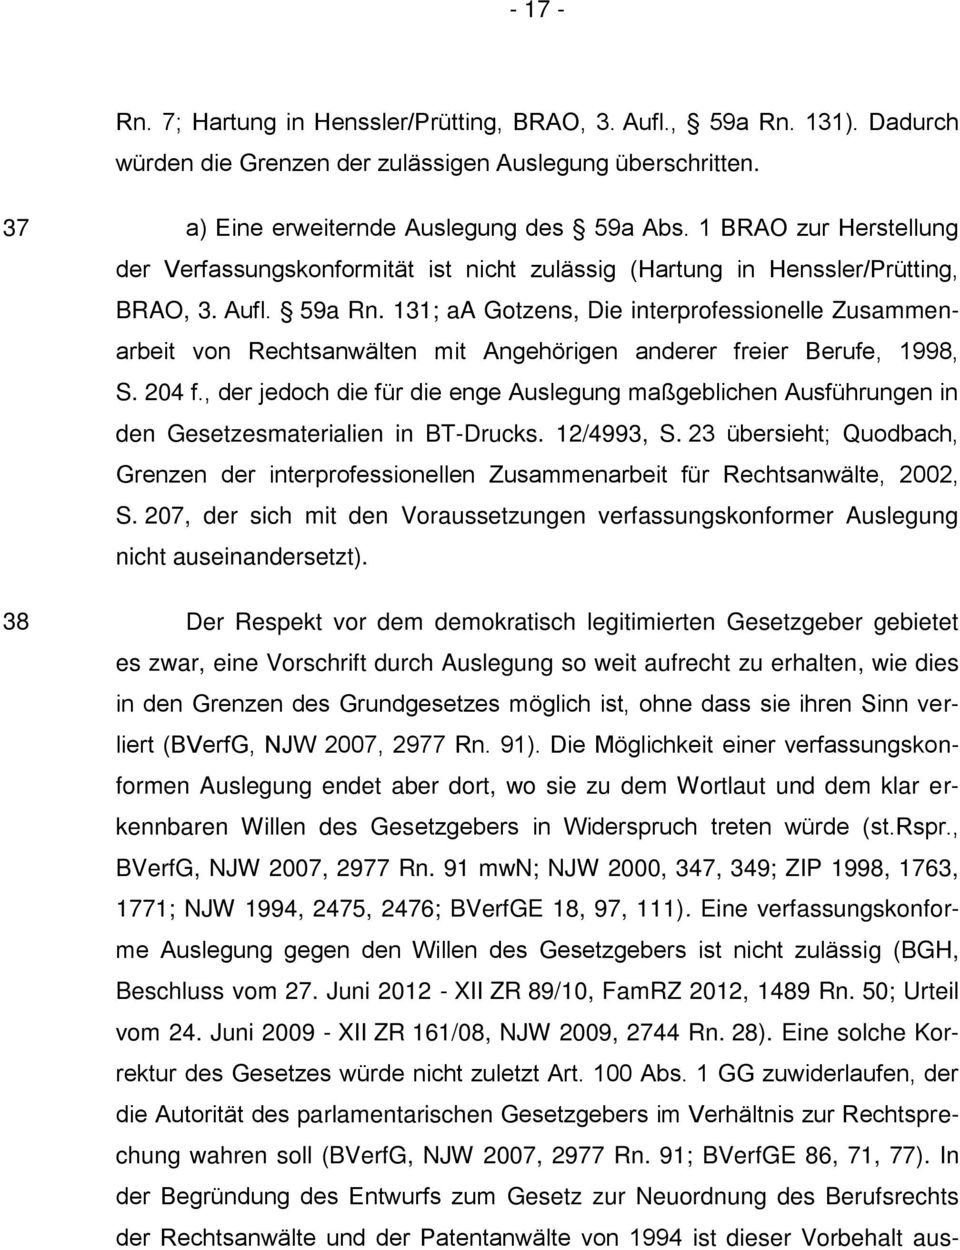 131; aa Gotzens, Die interprofessionelle Zusammenarbeit von Rechtsanwälten mit Angehörigen anderer freier Berufe, 1998, S. 204 f.